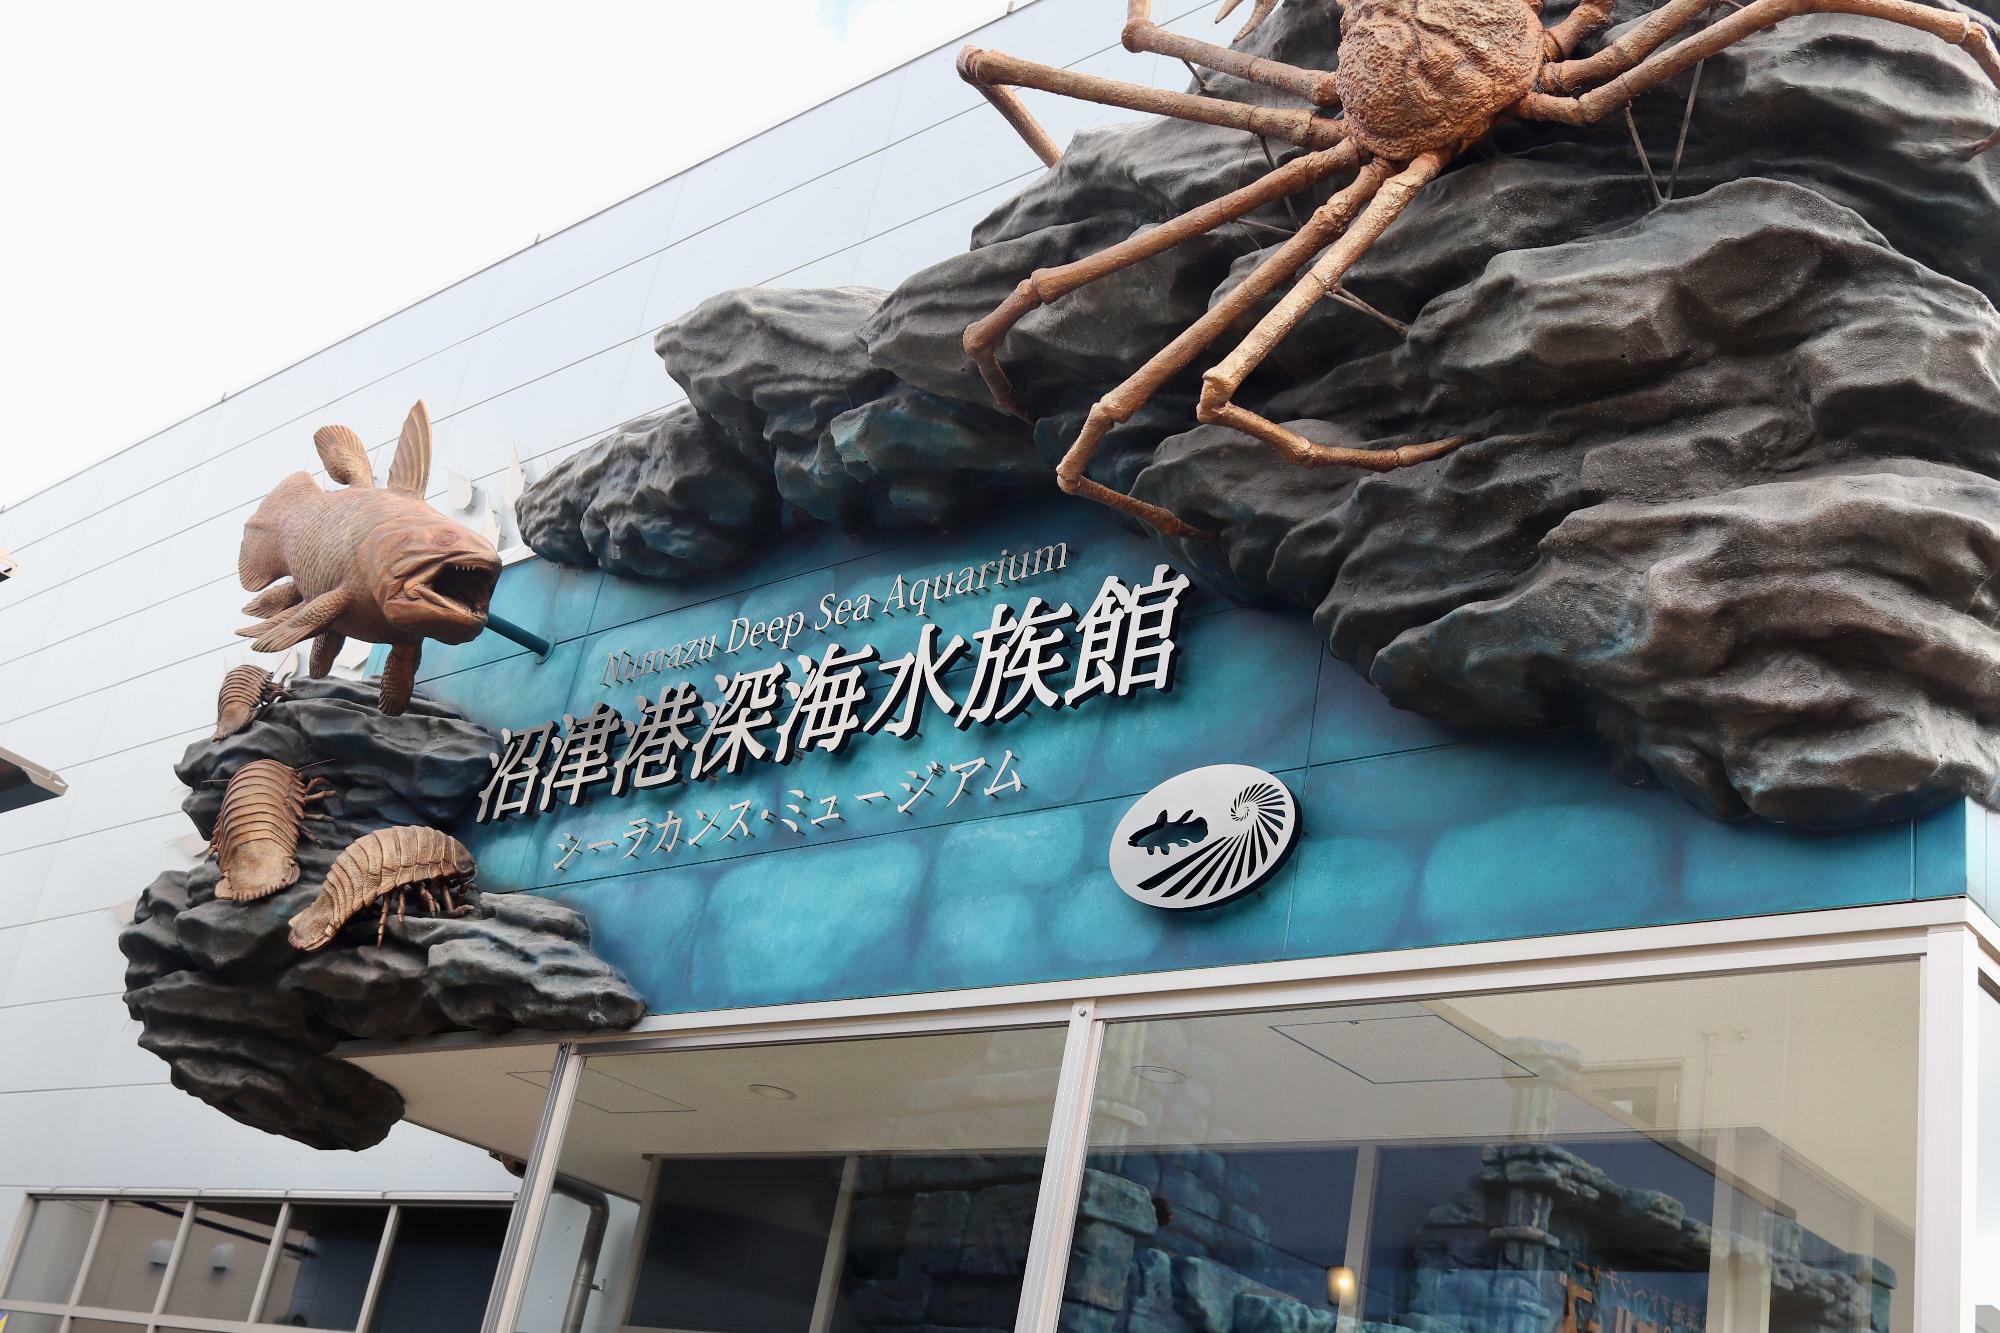 すぐ近くに「沼津港深海水族館」さんもあります